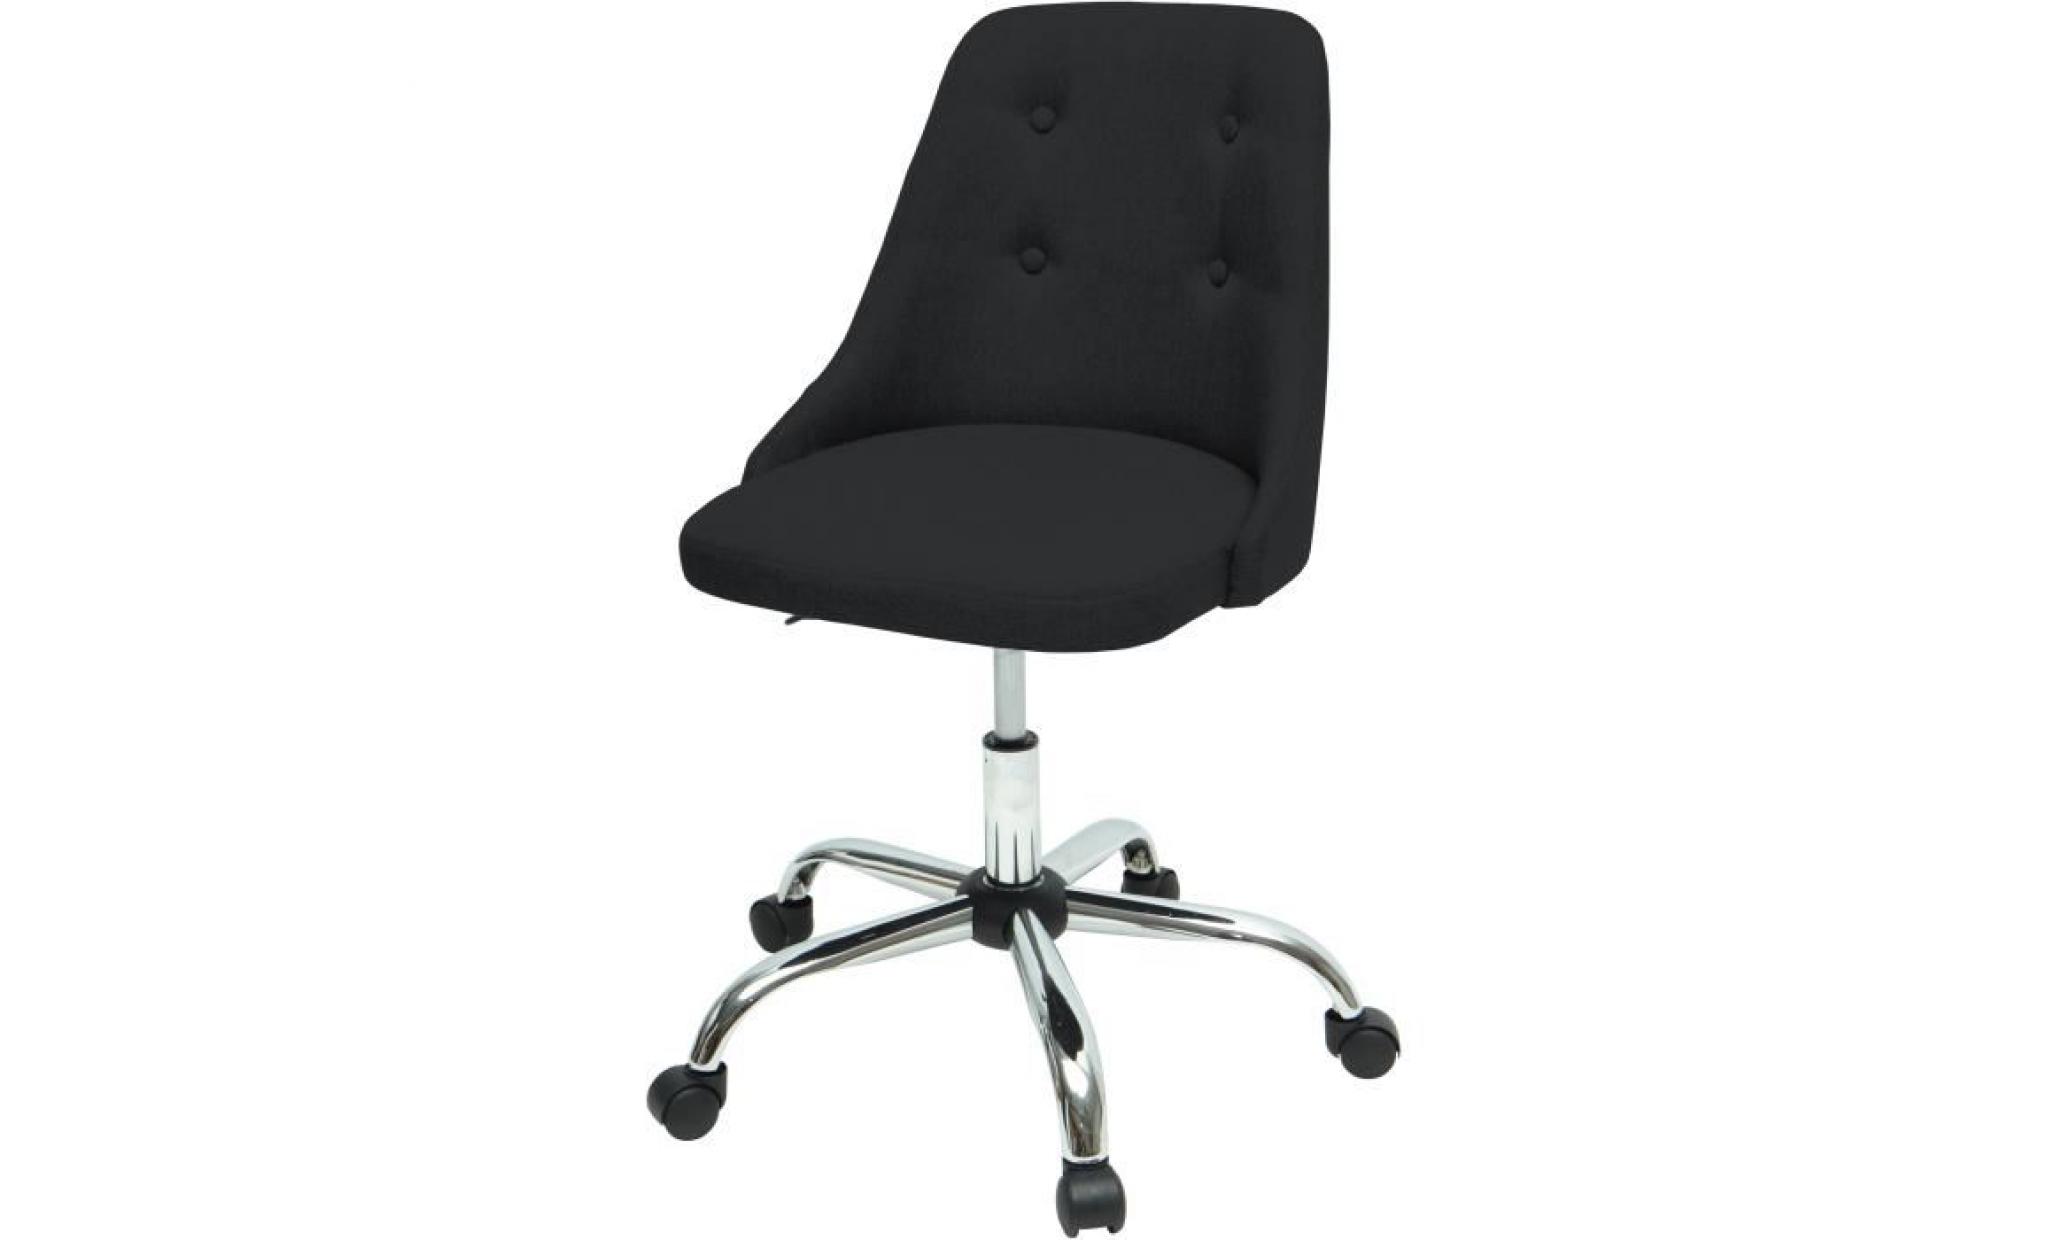 sigma chaise de bureau   simili et tissu noir   style contemporain   l 45,5 x p 47,5 cm